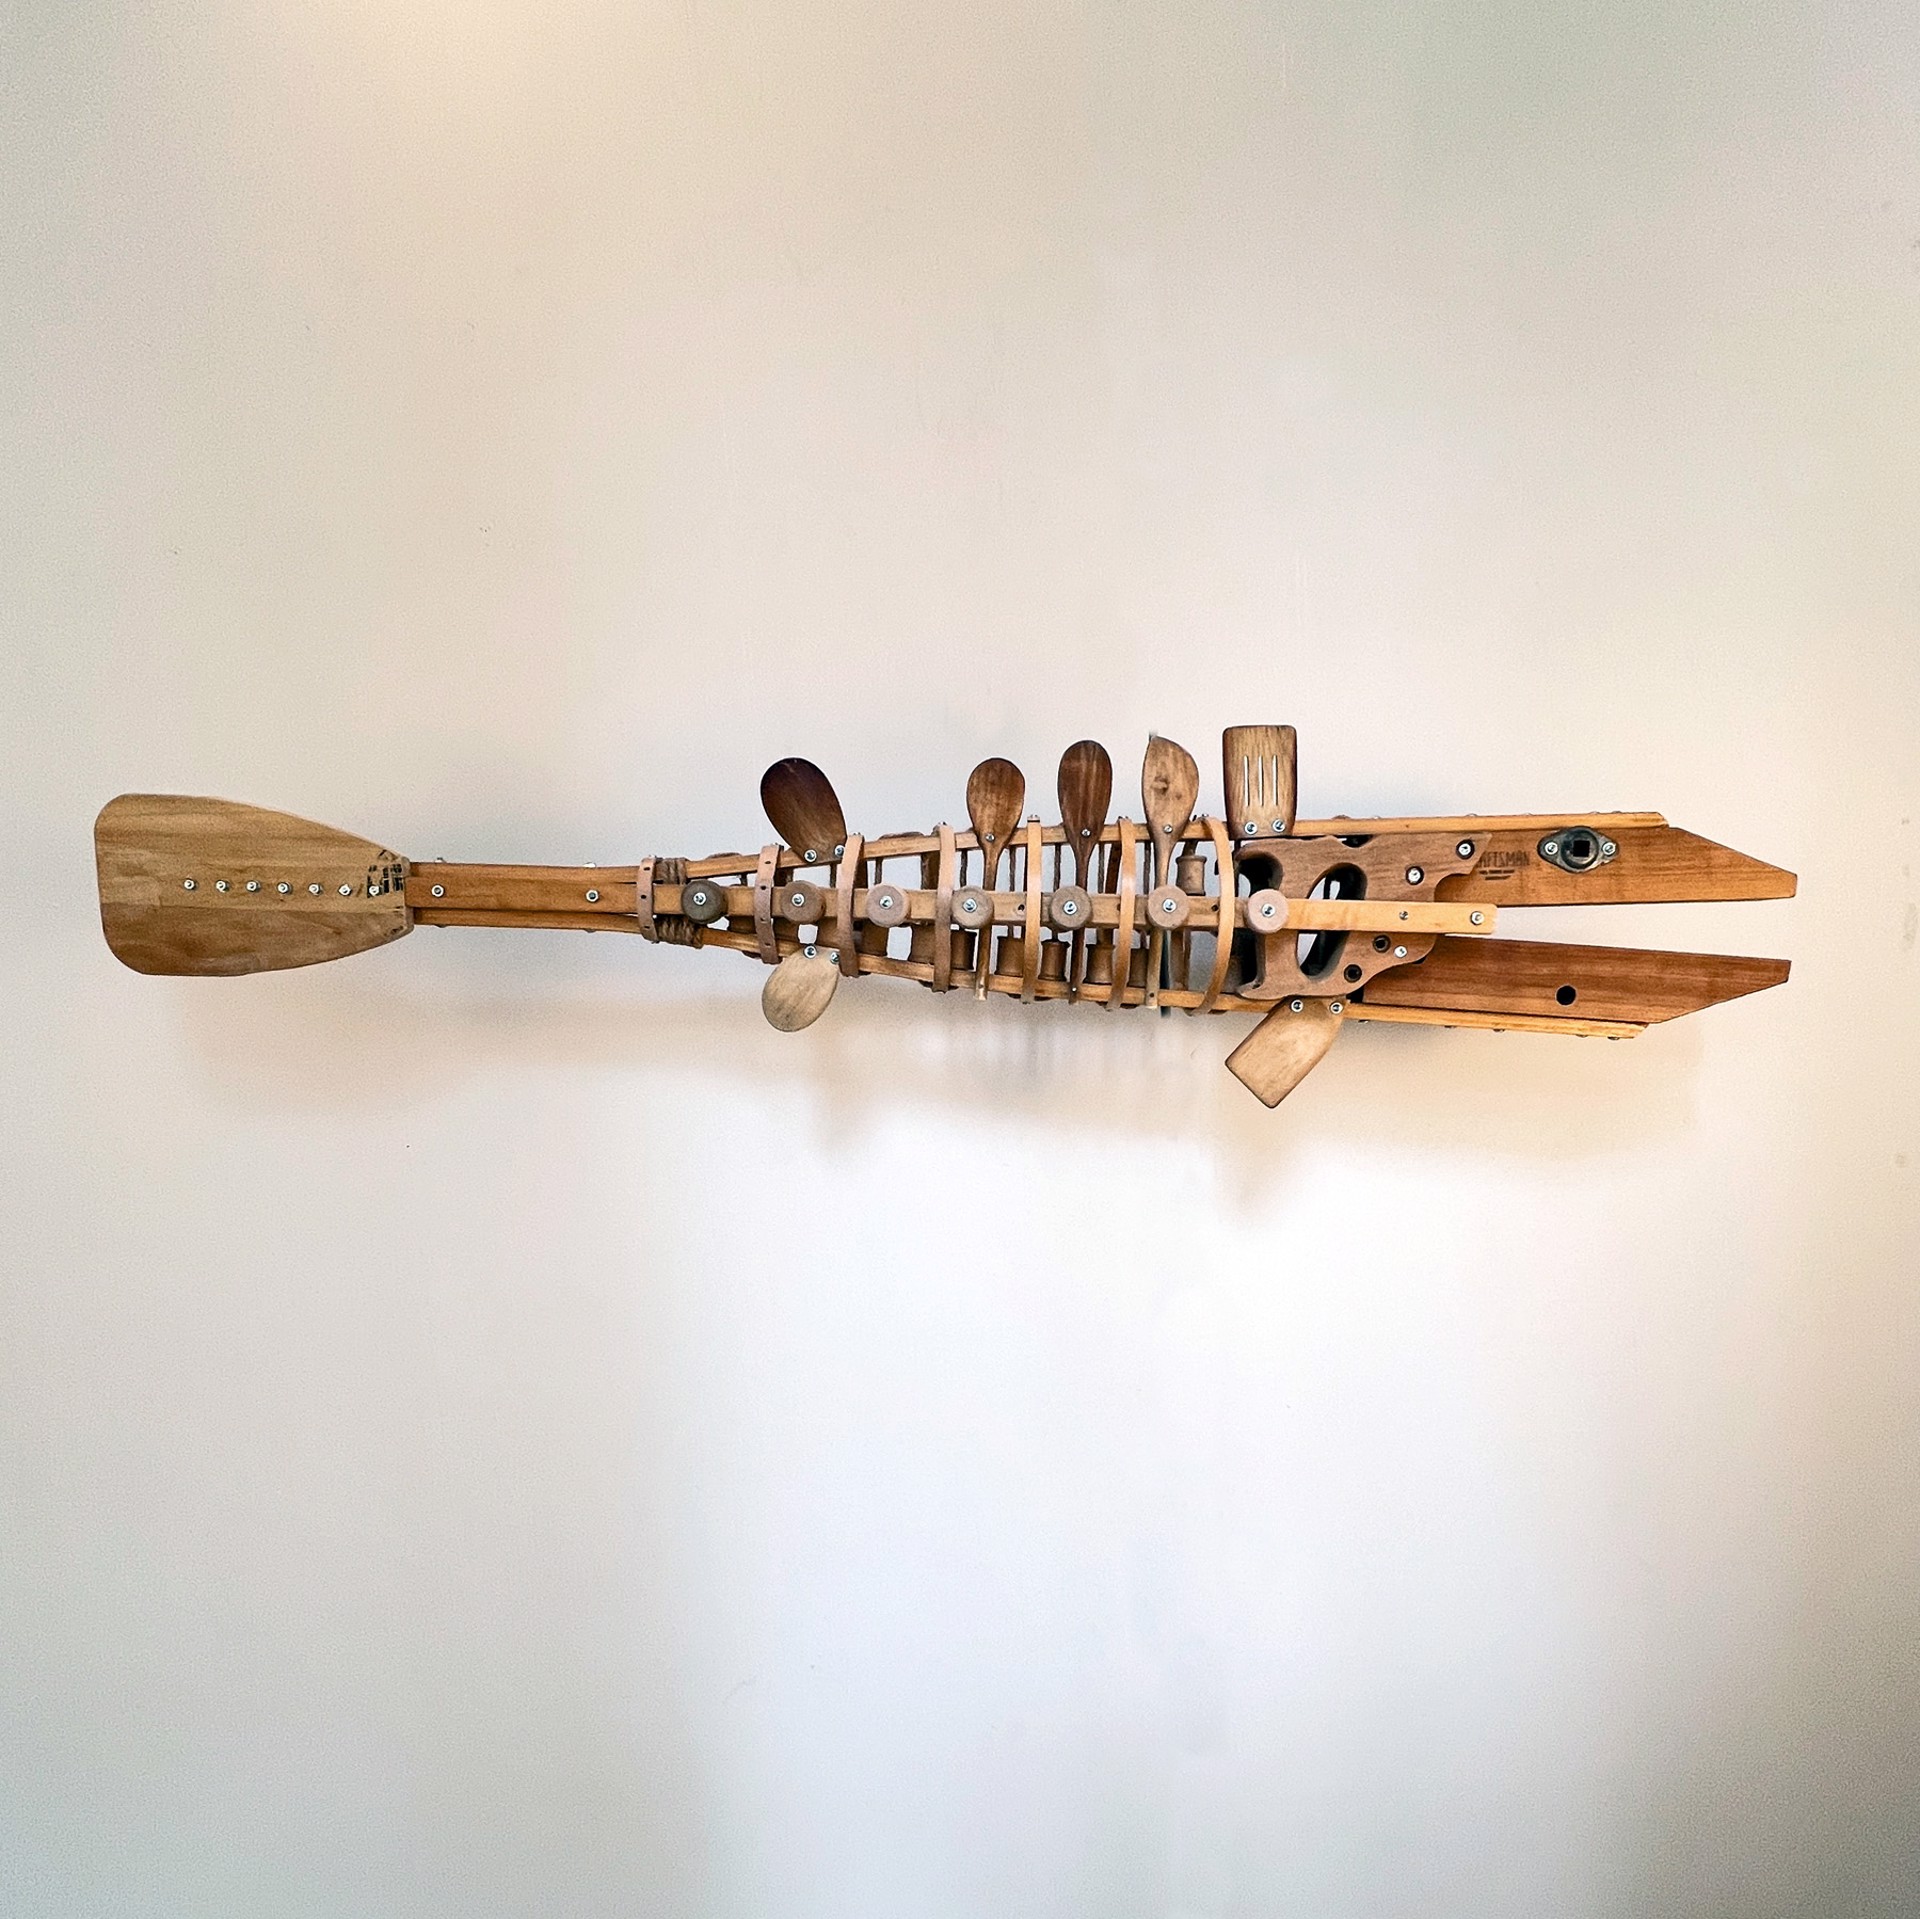 Craftsman Carpenter Fish by John Self